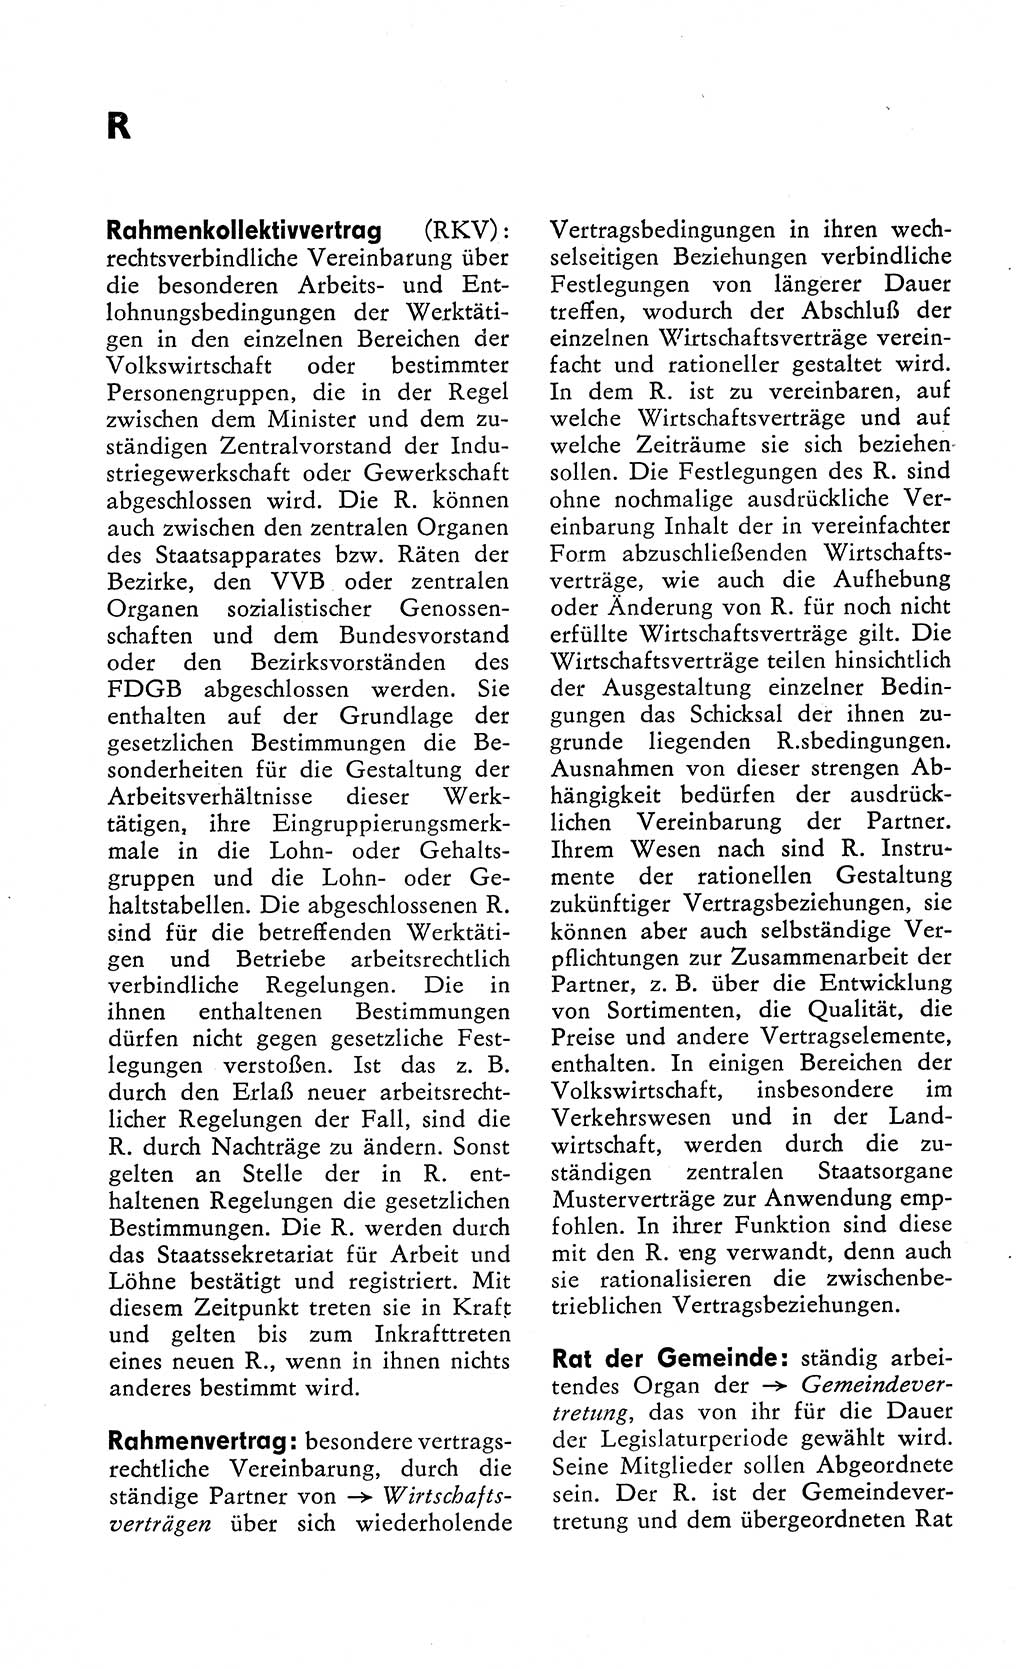 Wörterbuch zum sozialistischen Staat [Deutsche Demokratische Republik (DDR)] 1974, Seite 230 (Wb. soz. St. DDR 1974, S. 230)